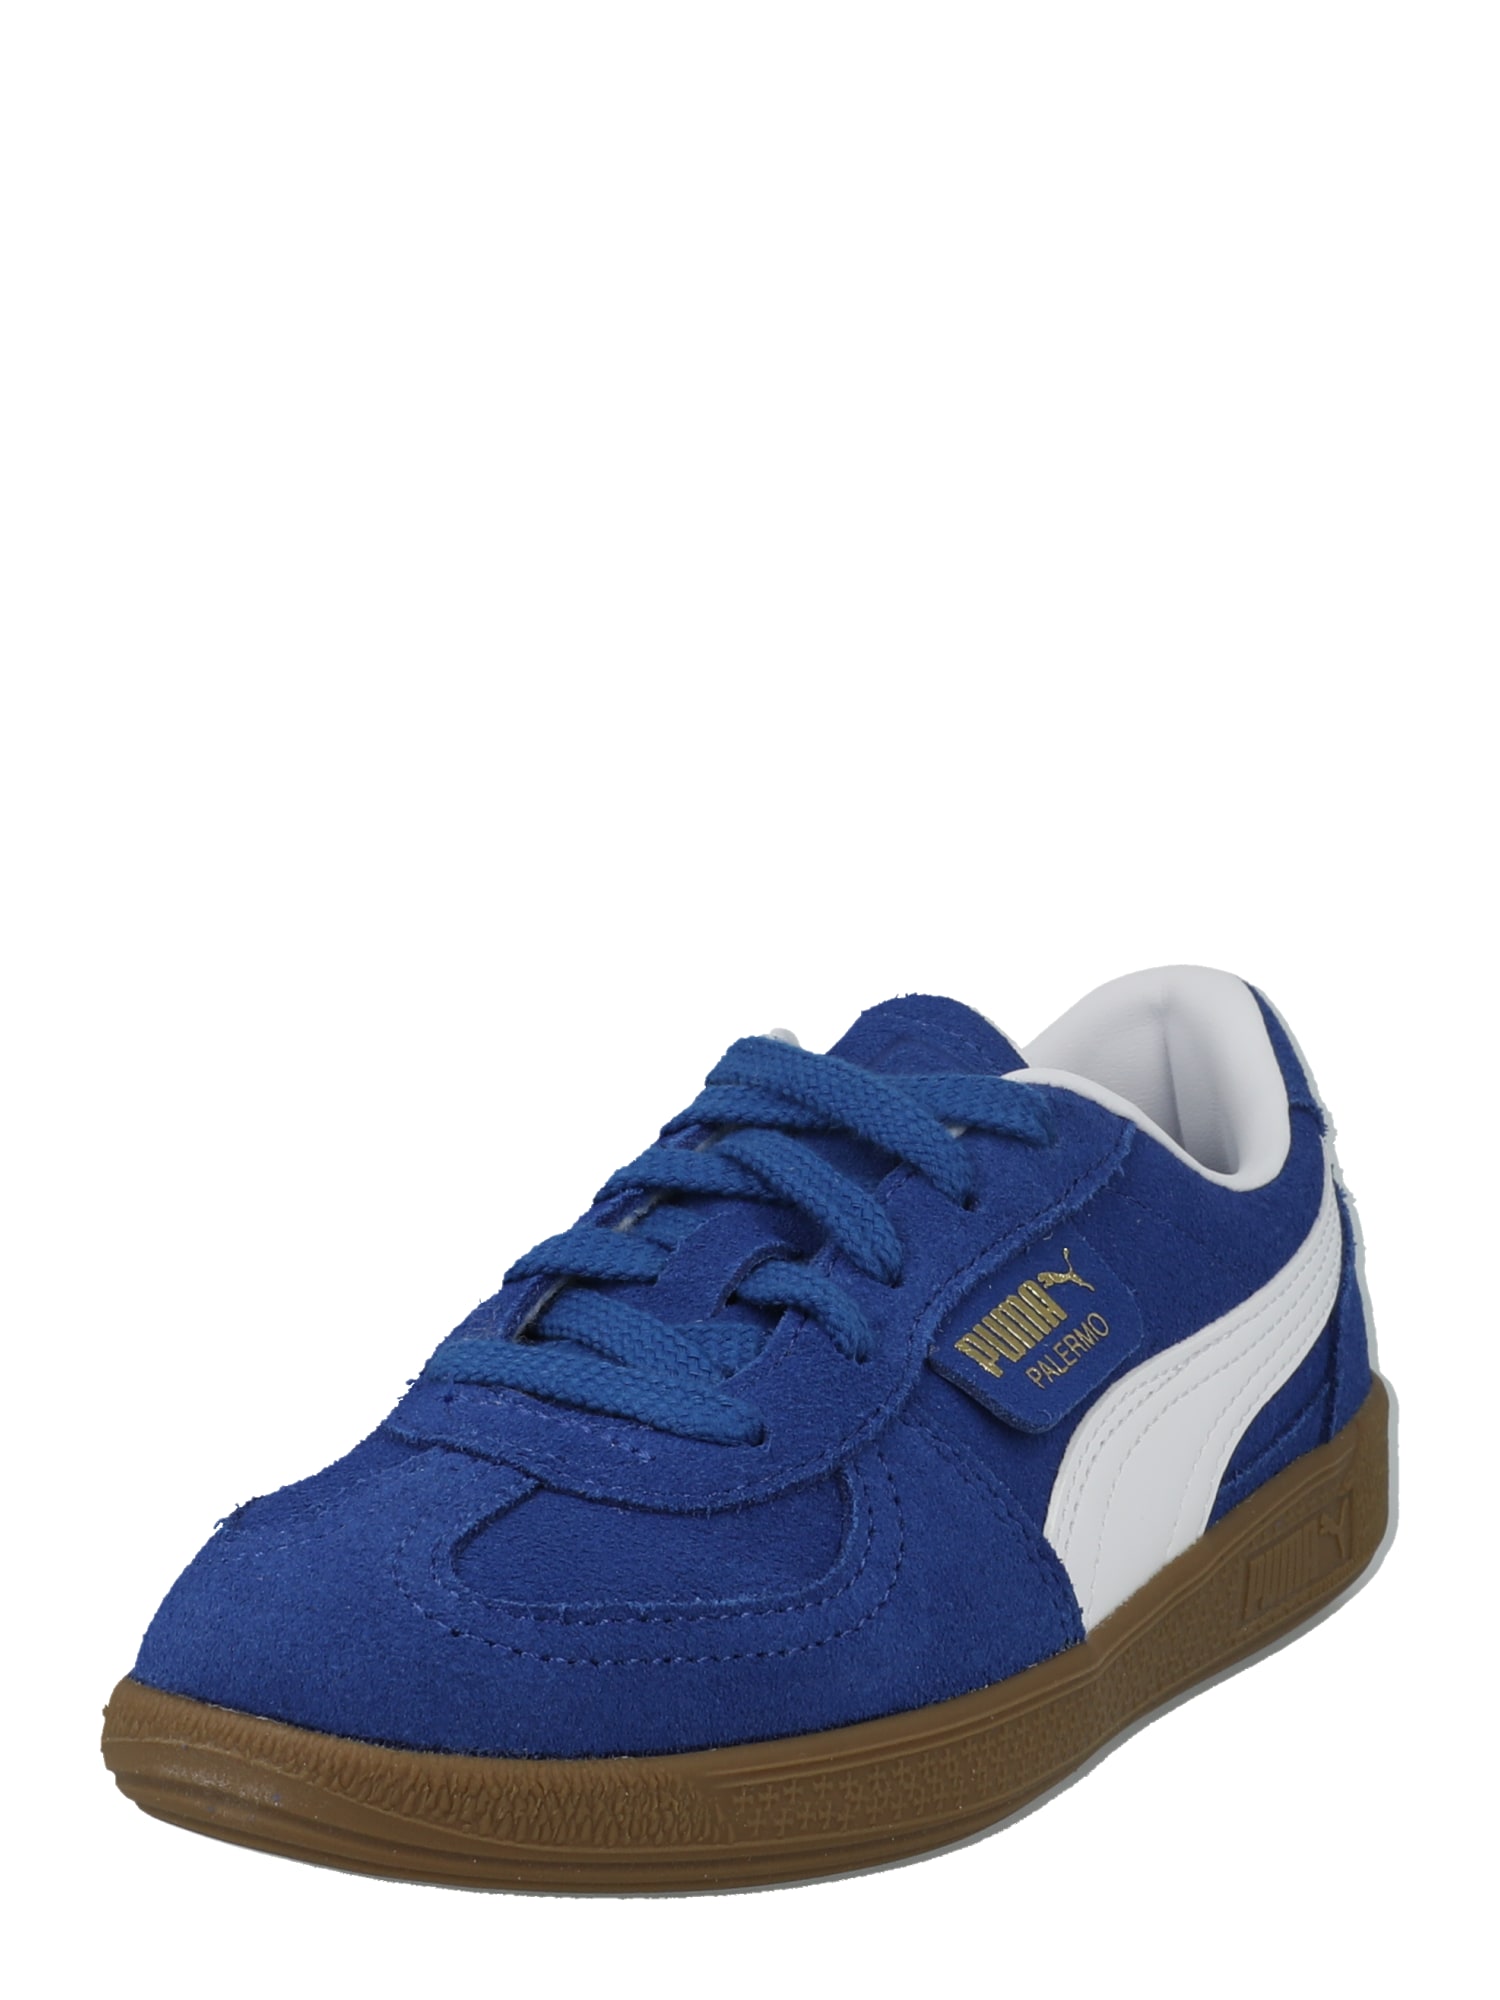 PUMA Sneaker 'Palermo'  albastru cobalt / alb murdar